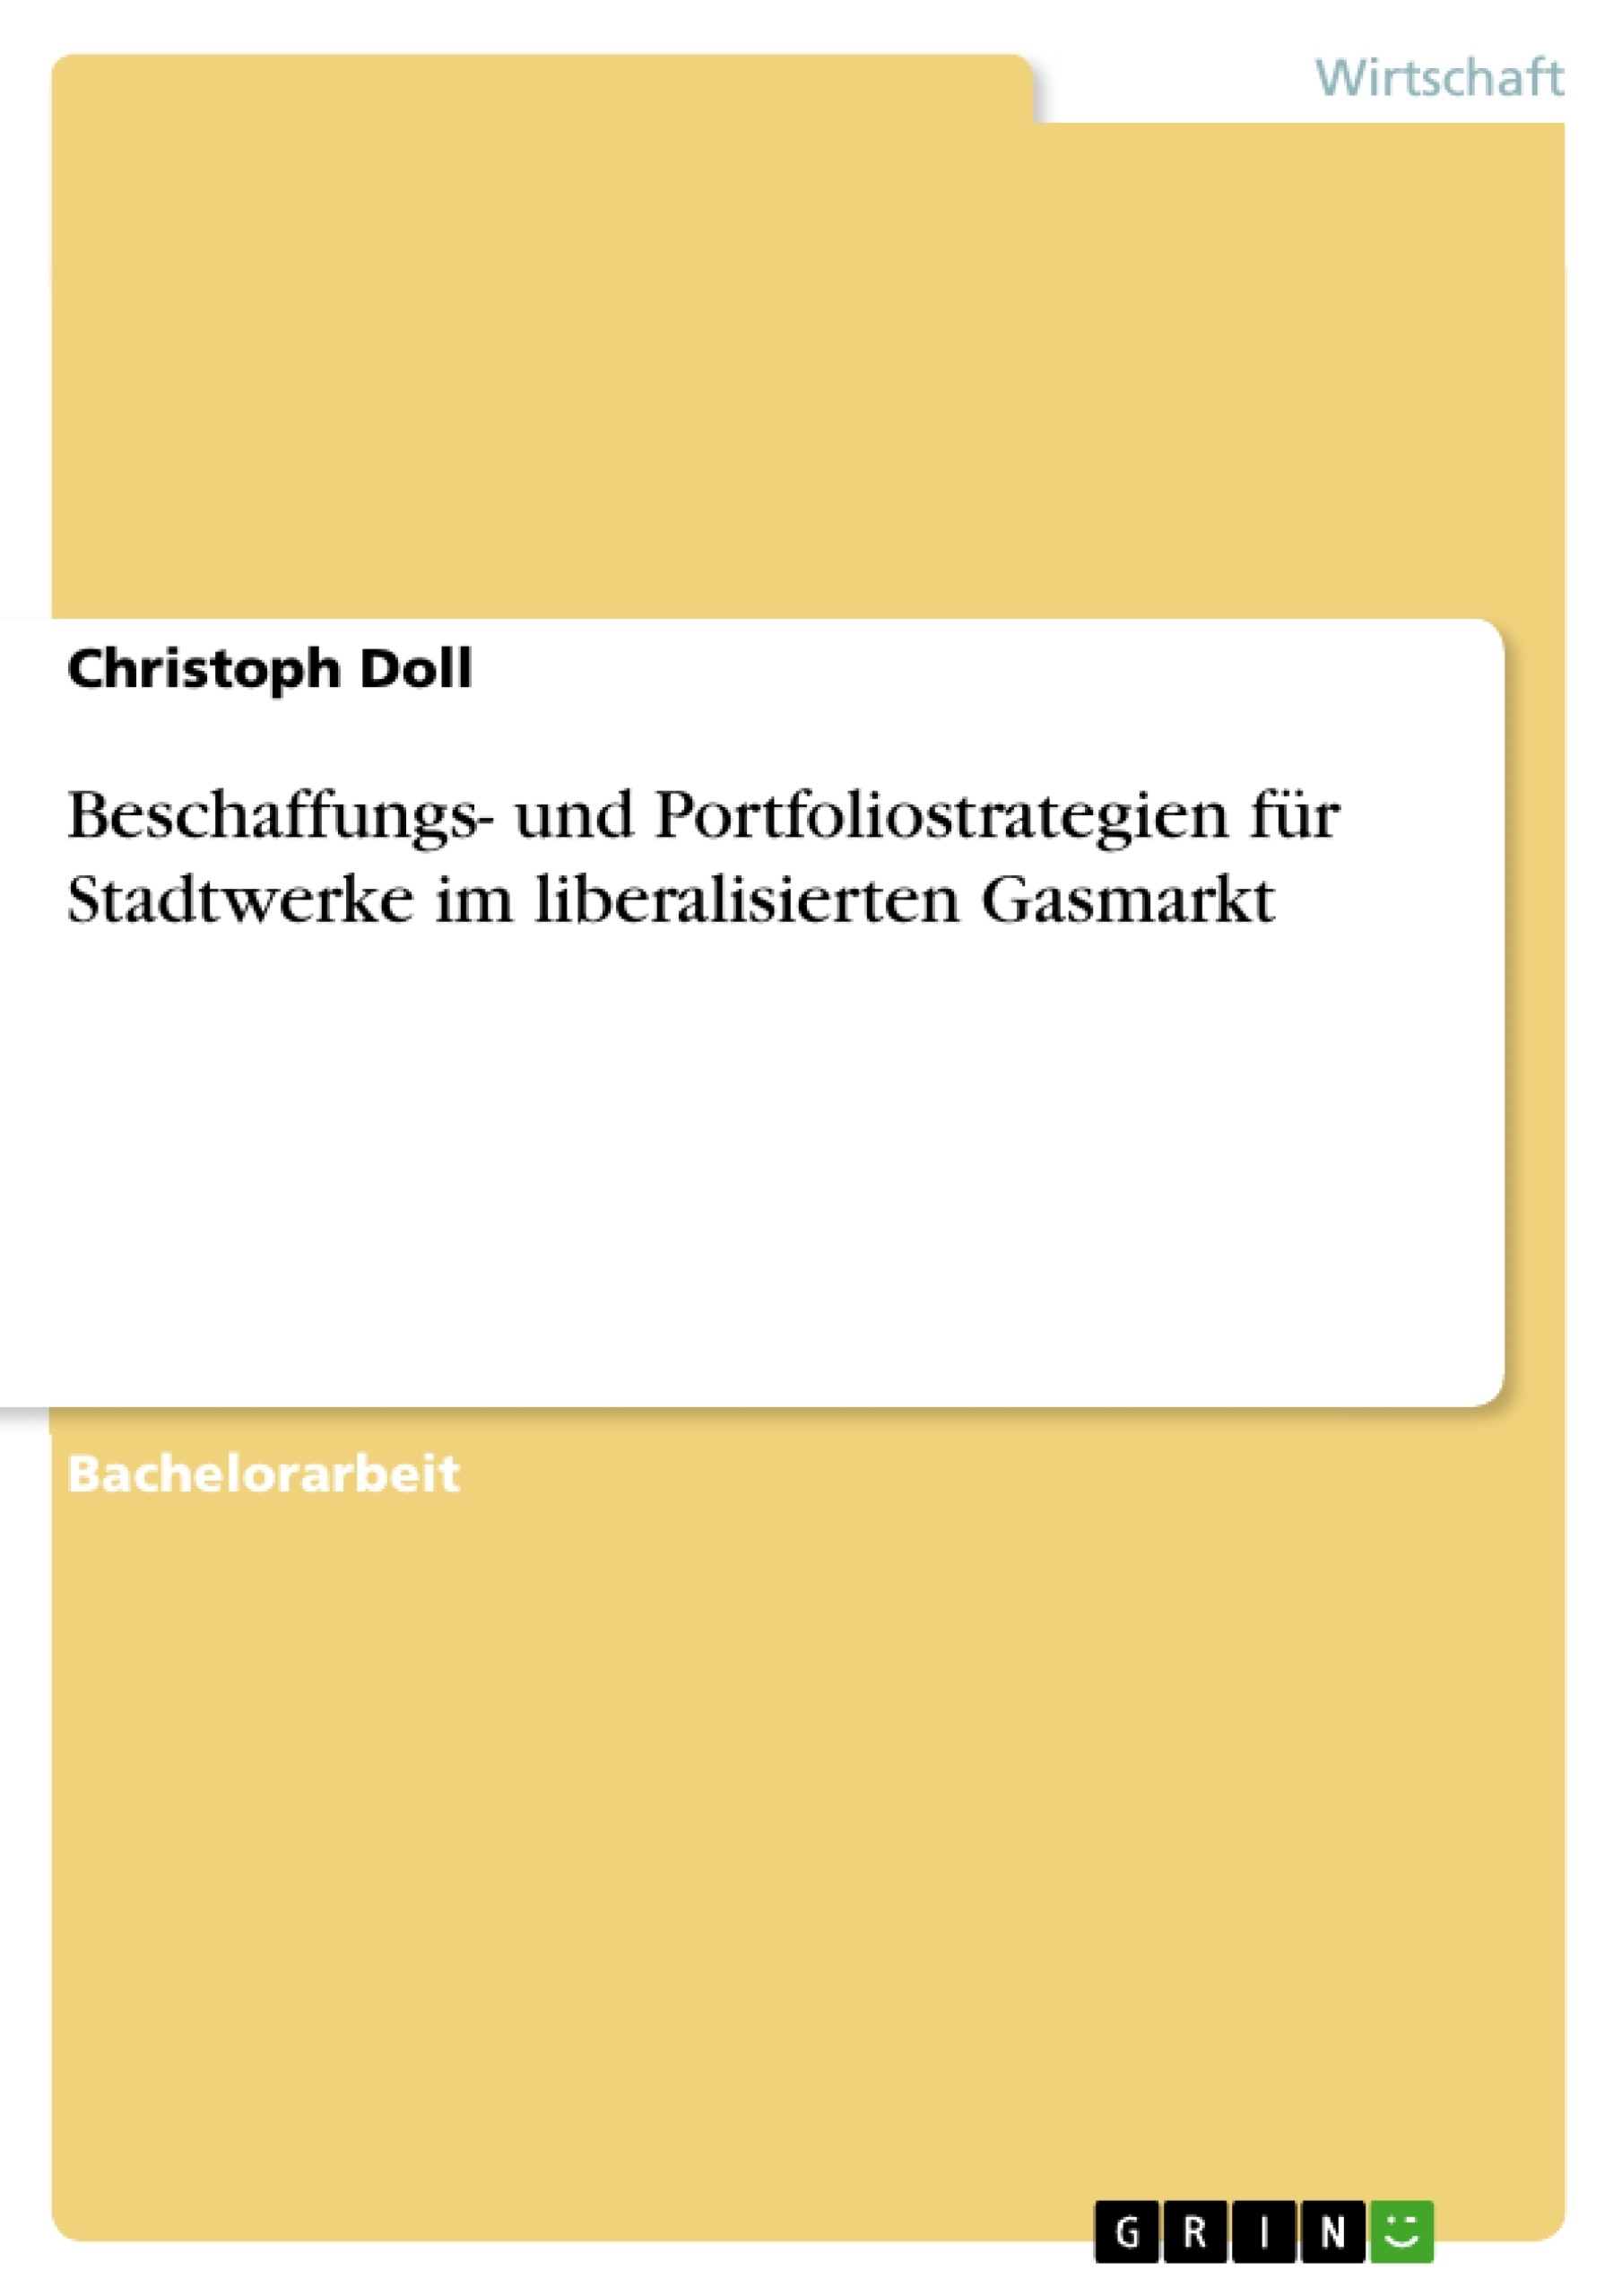 Title: Beschaffungs- und Portfoliostrategien für Stadtwerke im liberalisierten Gasmarkt